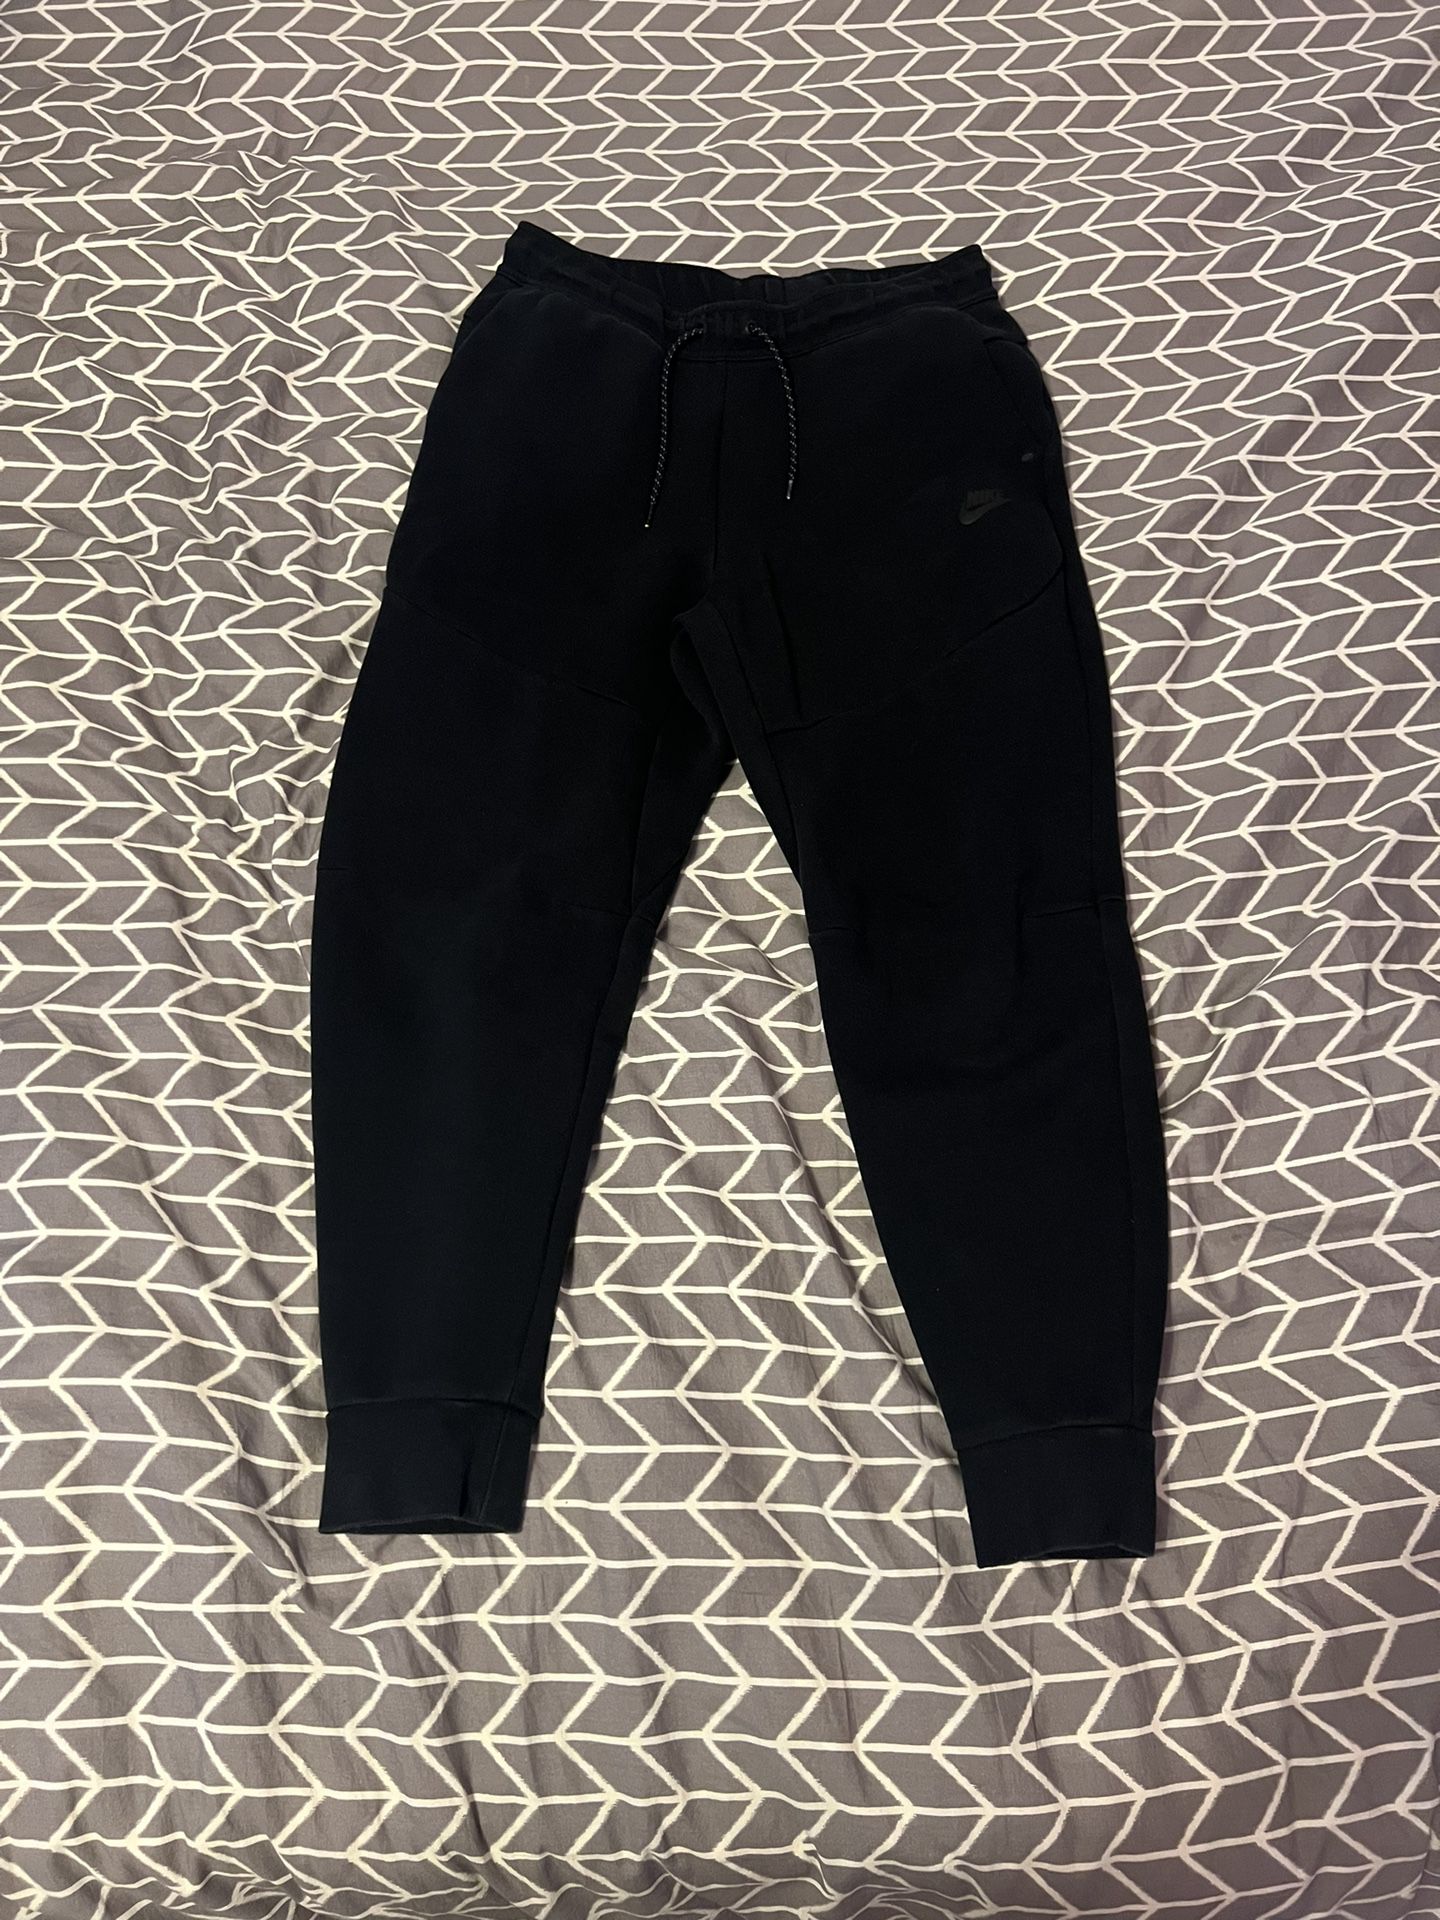 Black Nike Tech Fleece Pants Size M